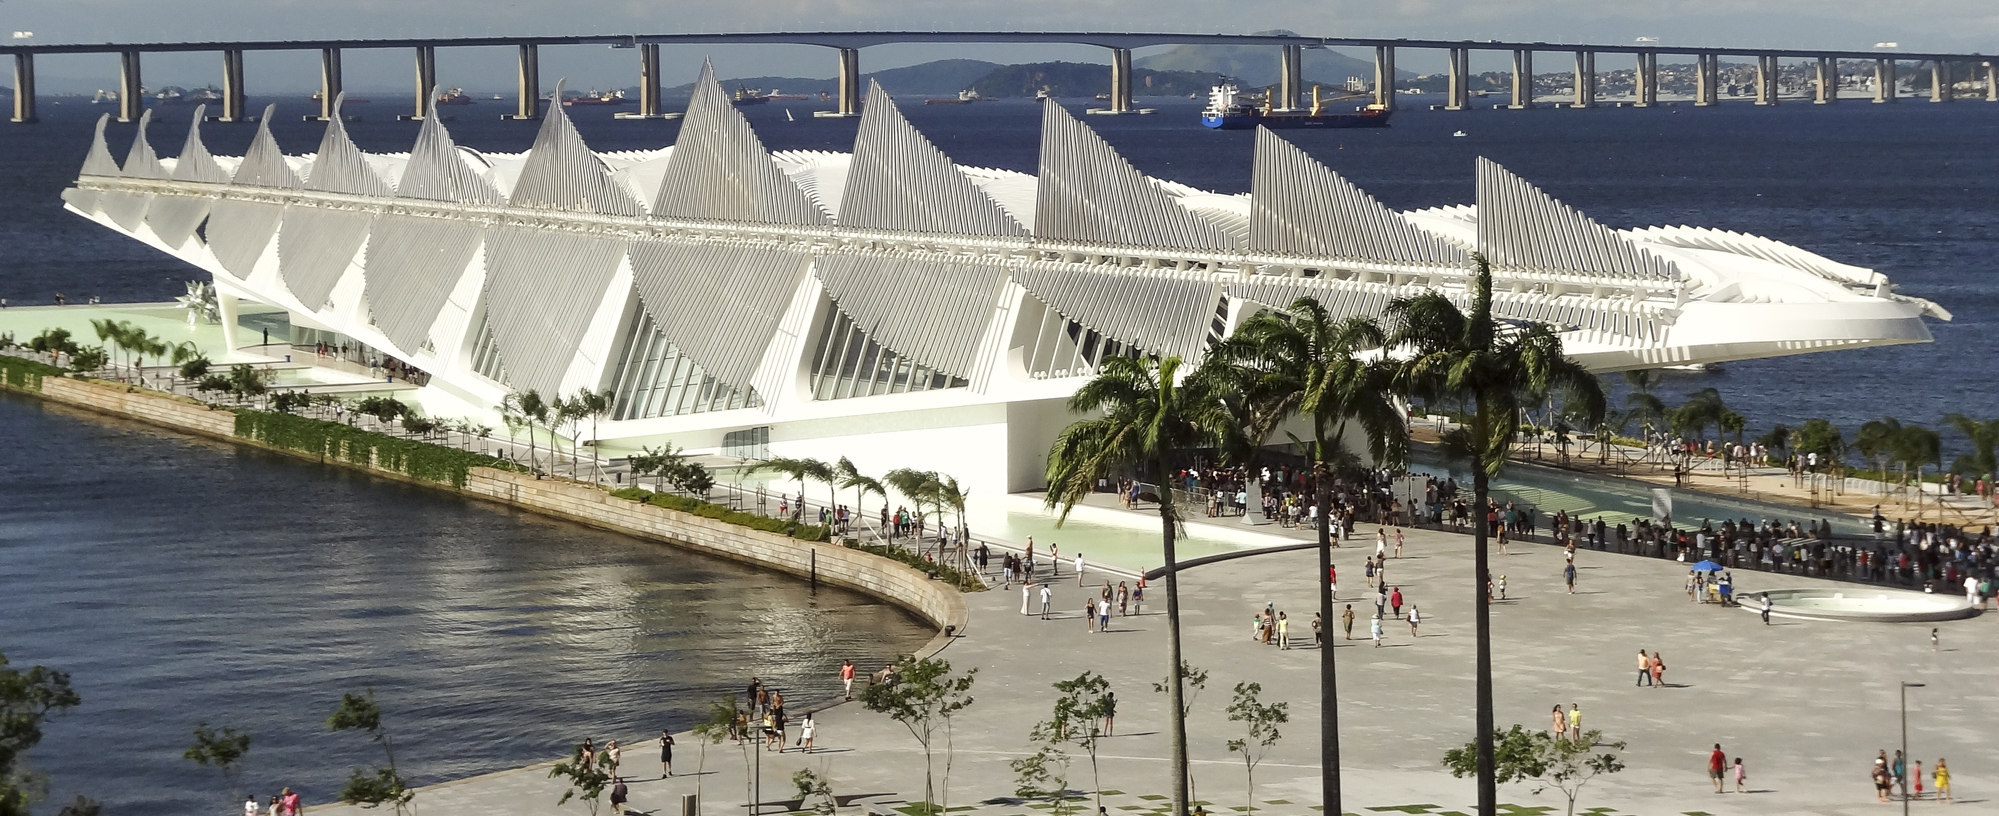 Programação do UIA 2020 será conhecida em evento no Rio de Janeiro